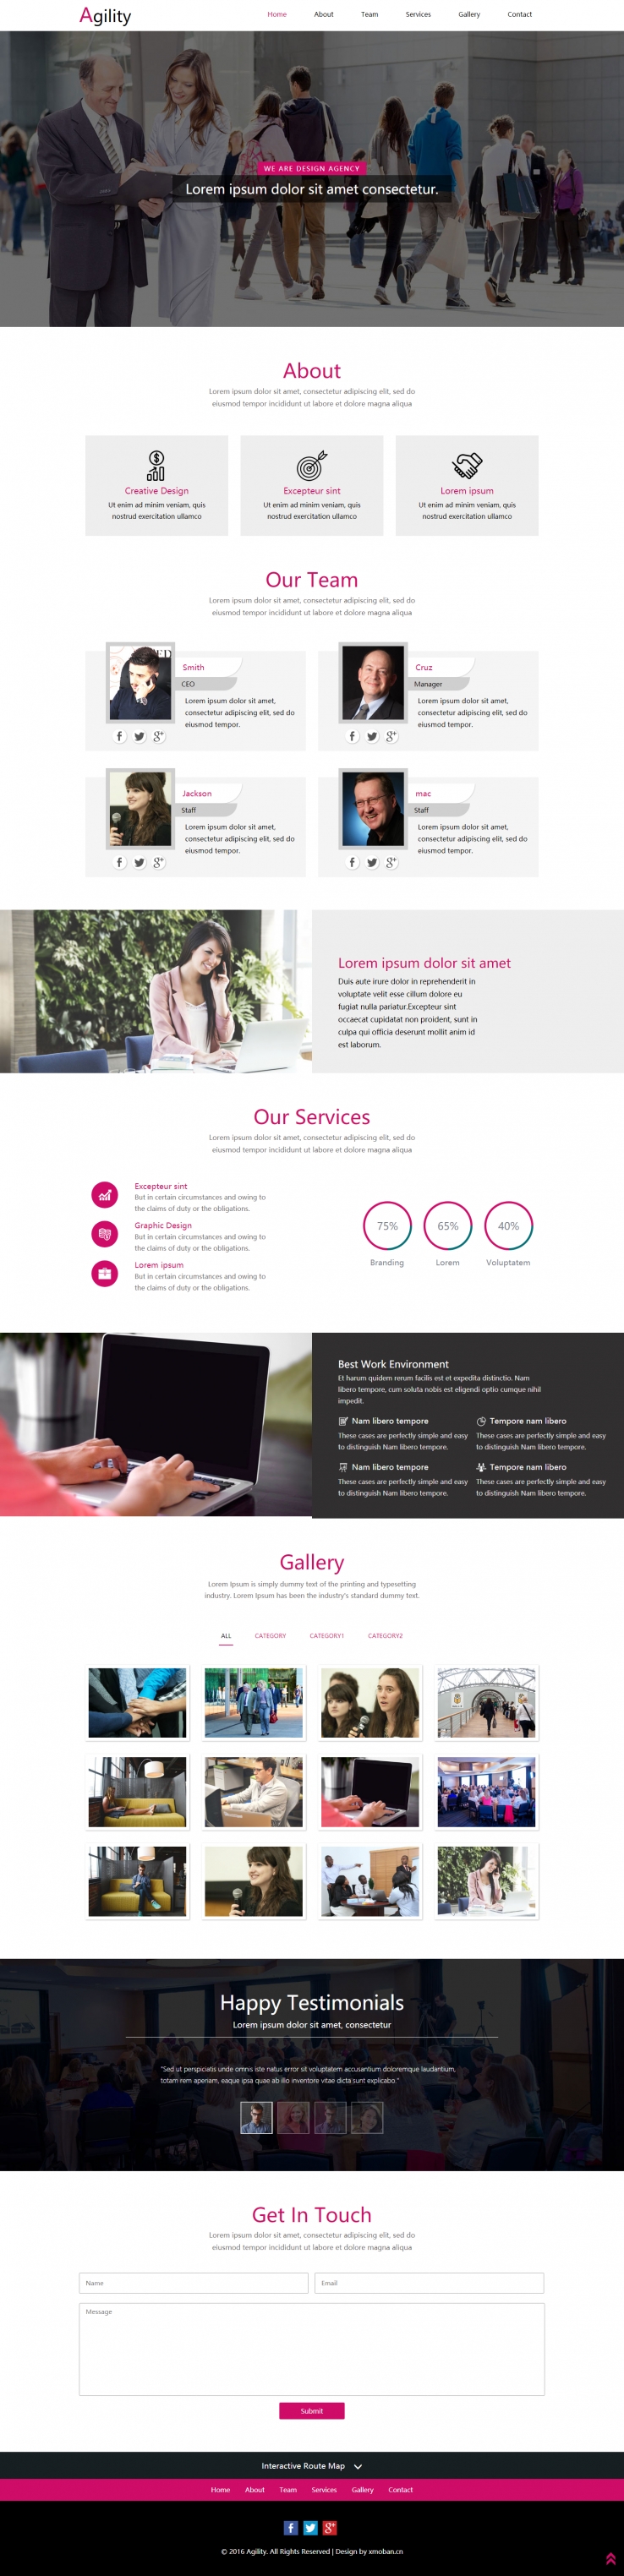 粉色欧美风格的商务公司企业网站源码下载